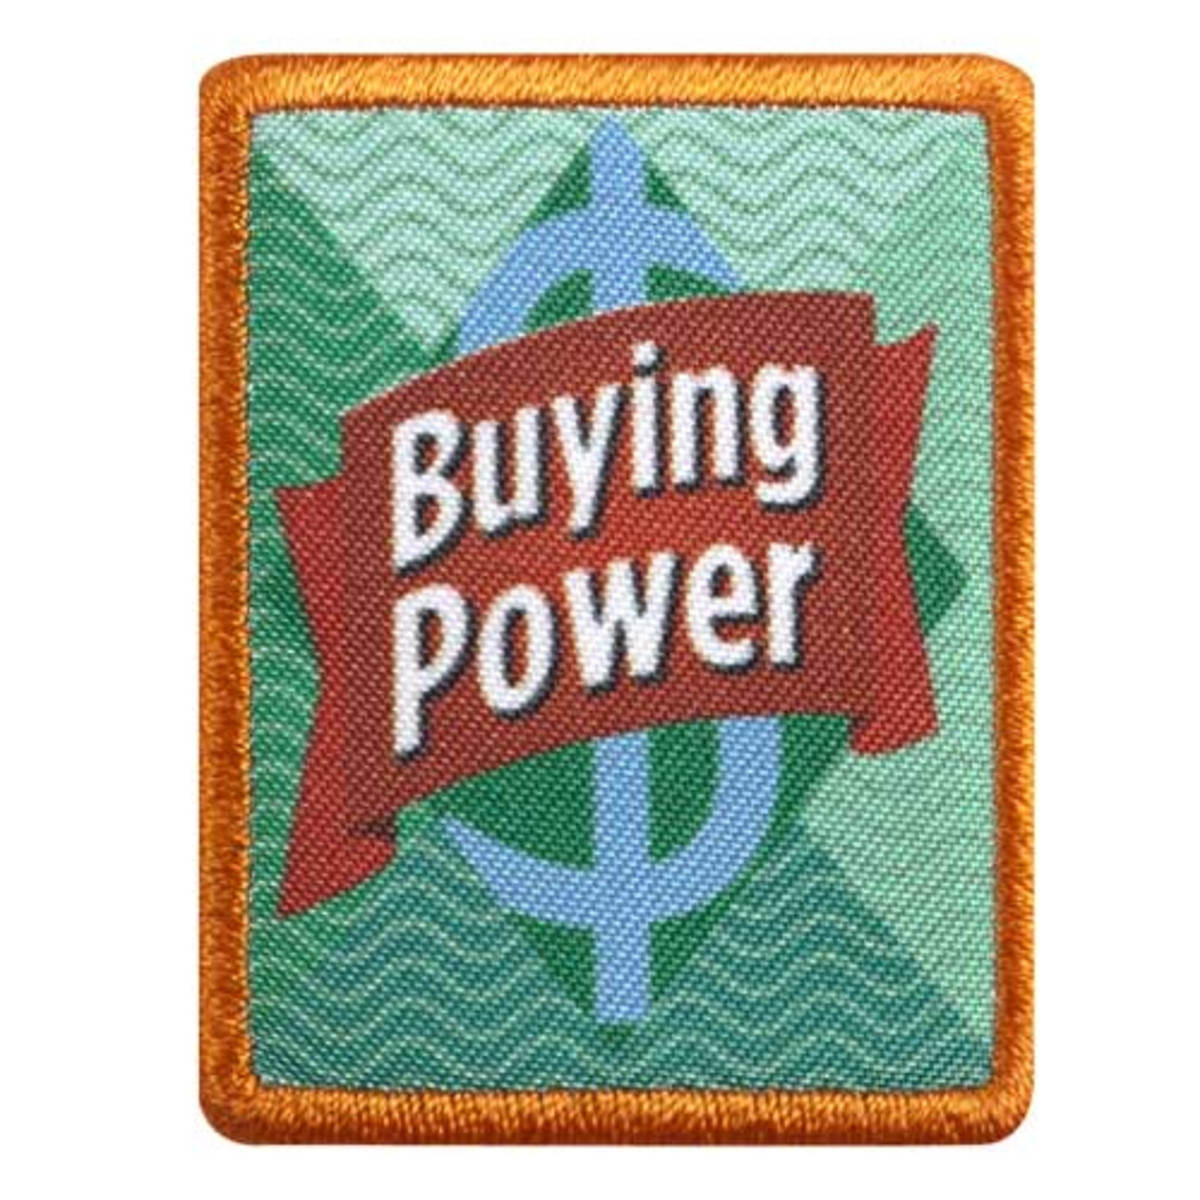 Sr. Buying Power